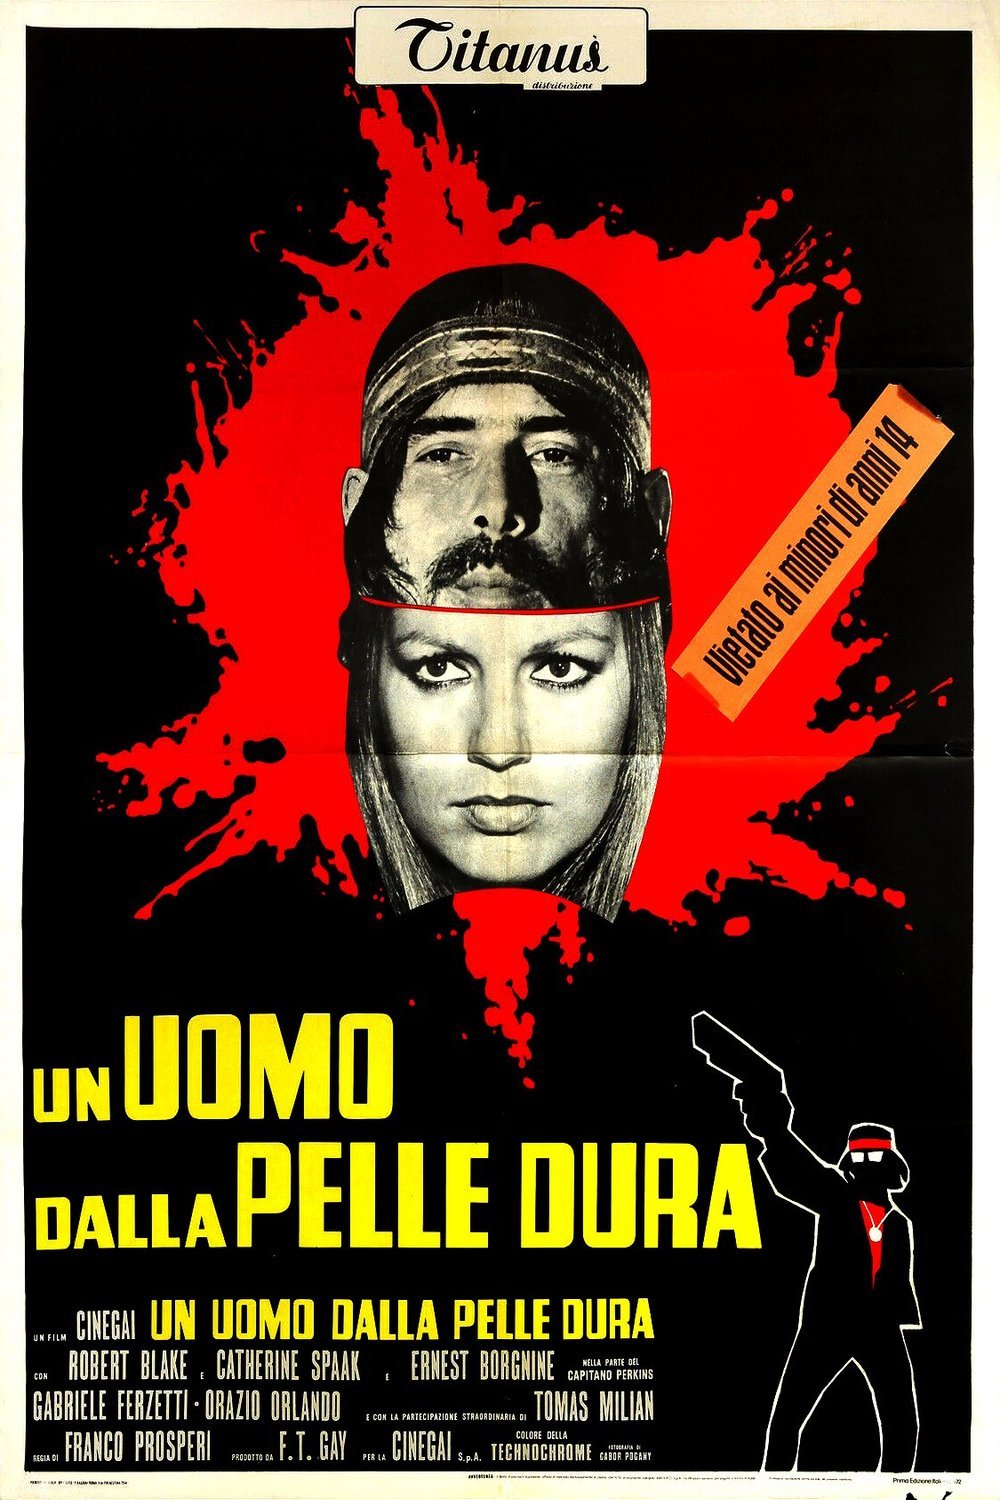 Italian poster of the movie Un uomo dalla pelle dura